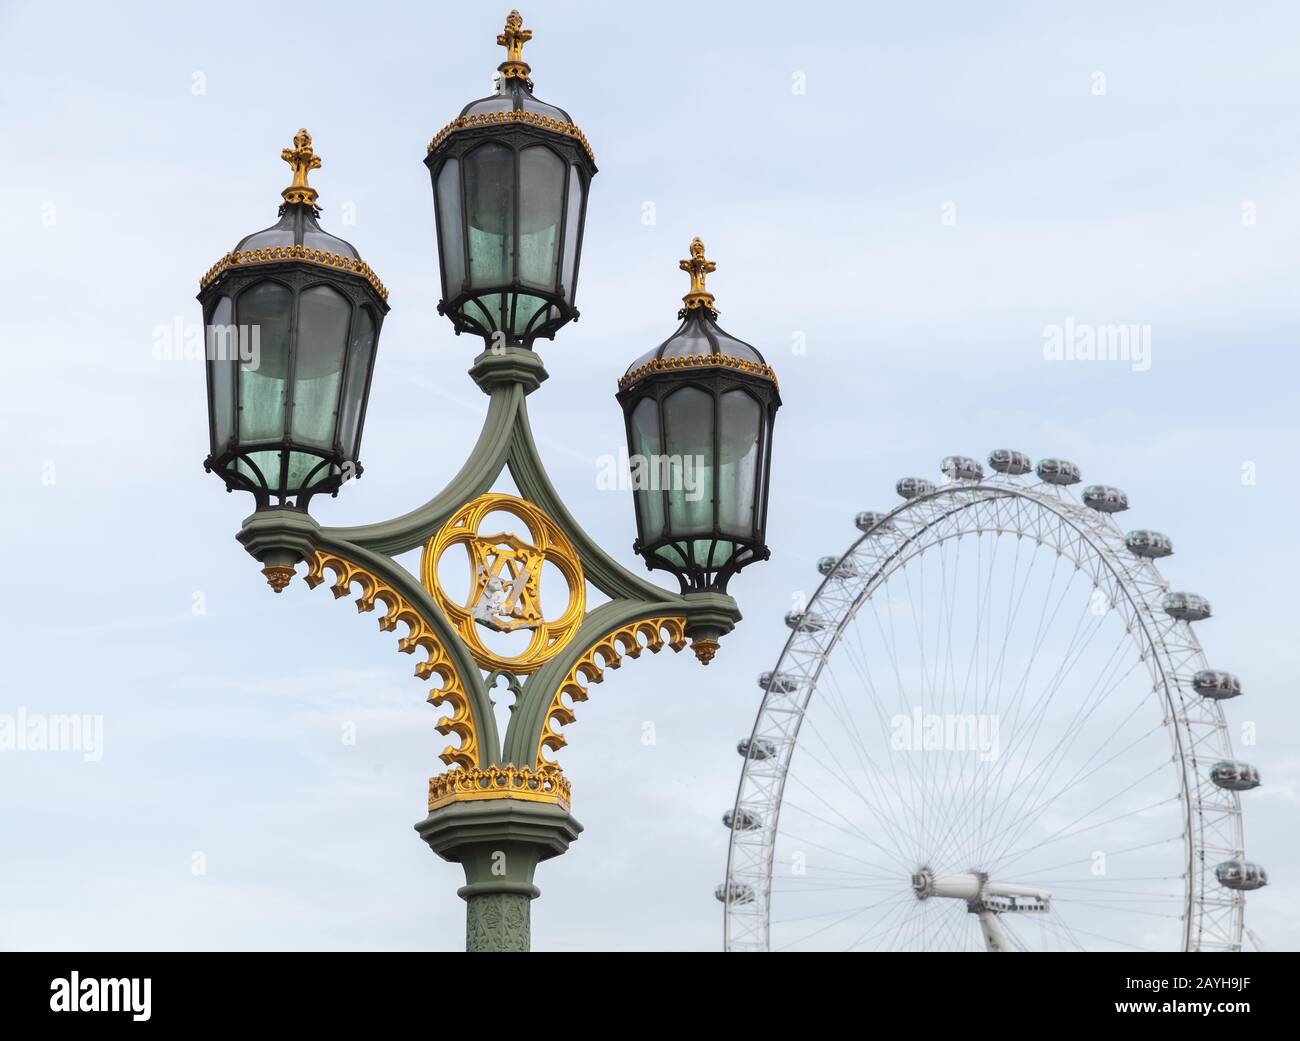 Londres, Royaume-Uni - 31 octobre 2017 : feu de rue vintage et roue géante Ferris London Eye sur fond Banque D'Images